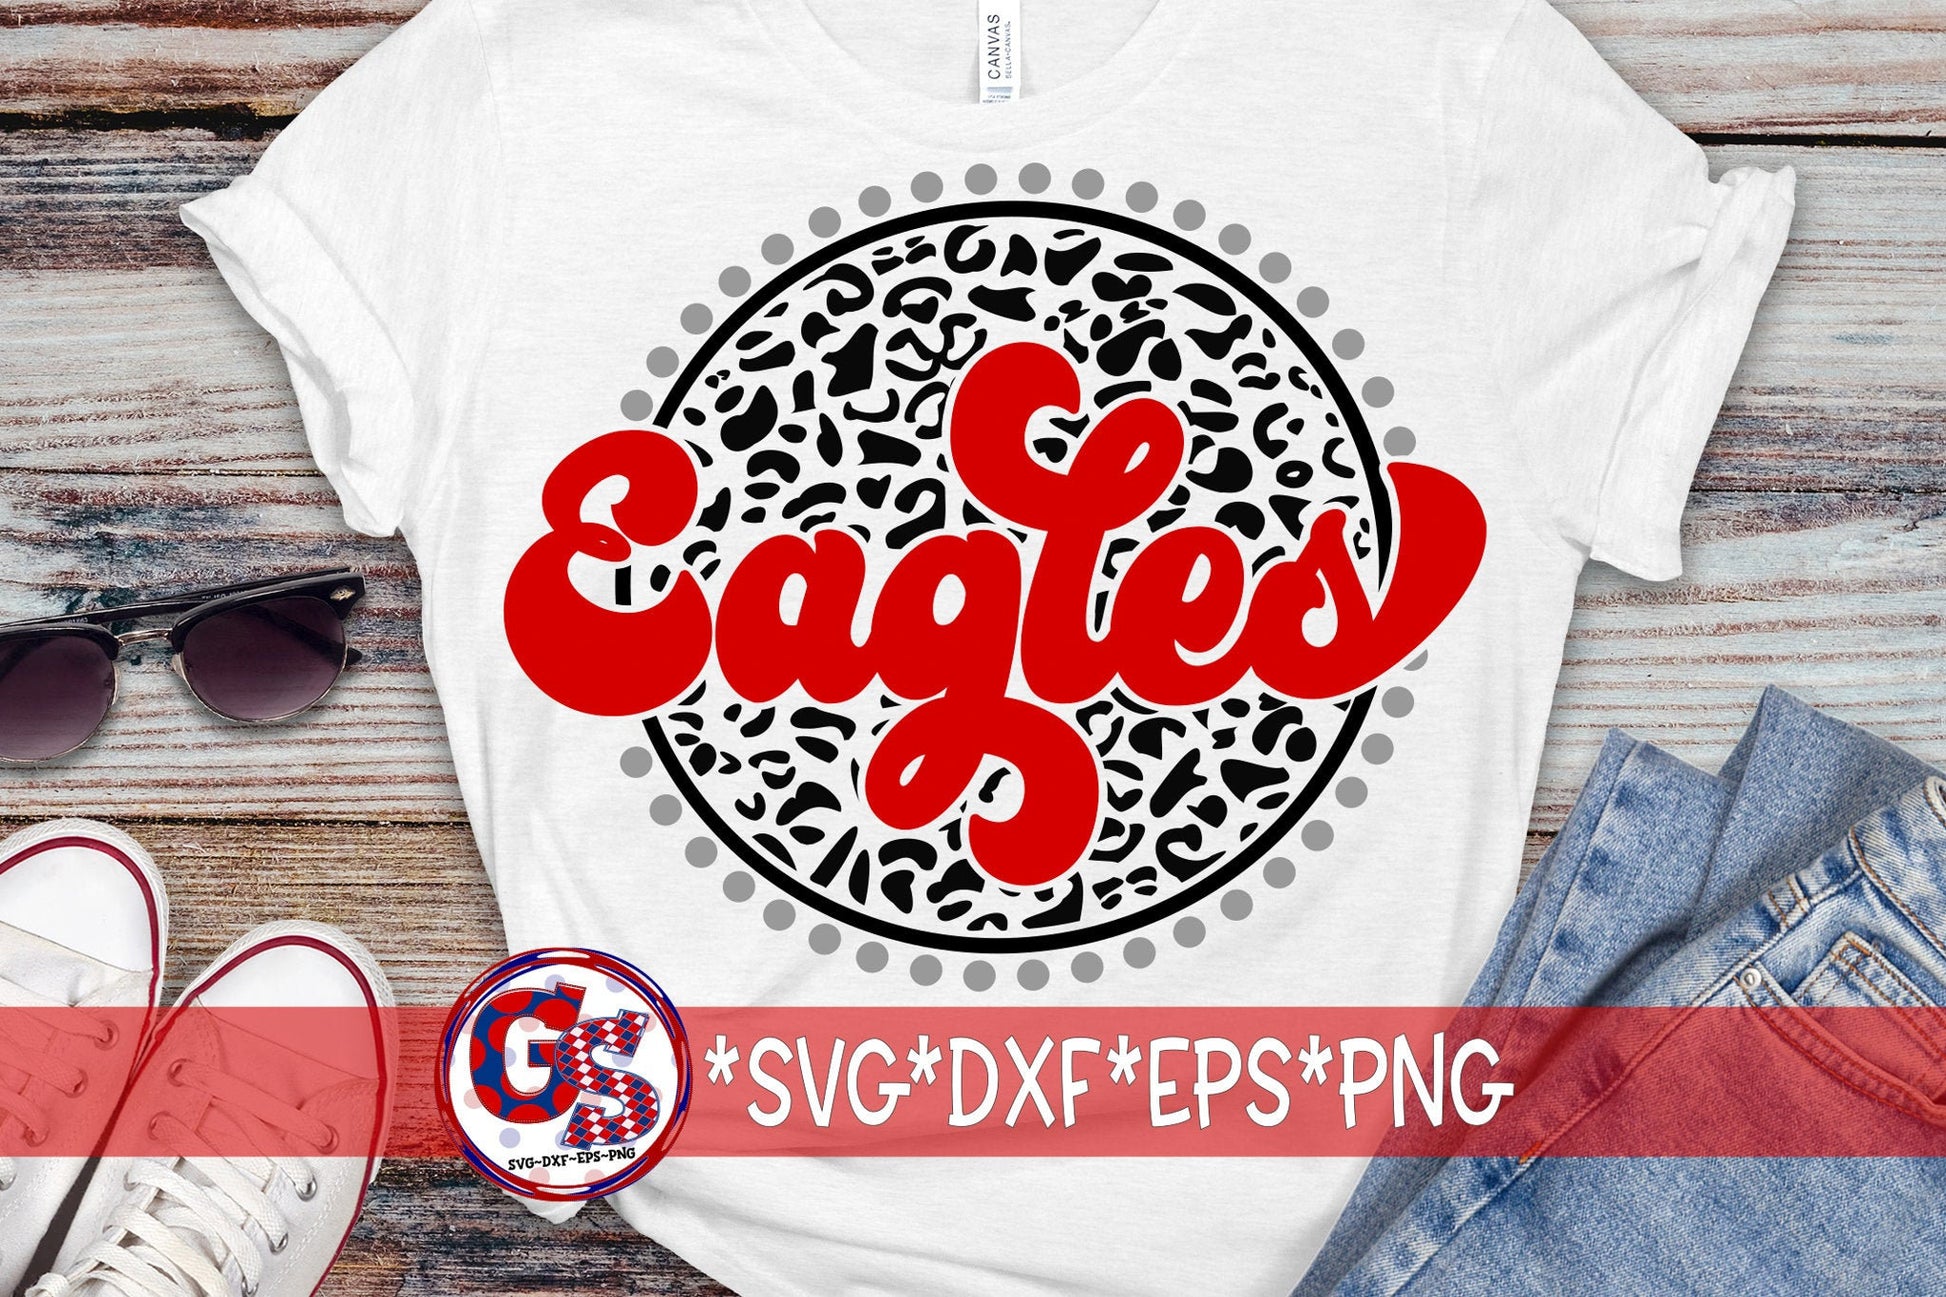 Eagles SvG | Eagles Retro Leopard svg dxf eps png. Eagles SvG | Eagles DxF | Retro Eagles Leopard SvG | Eagles | Instant Download Cut File